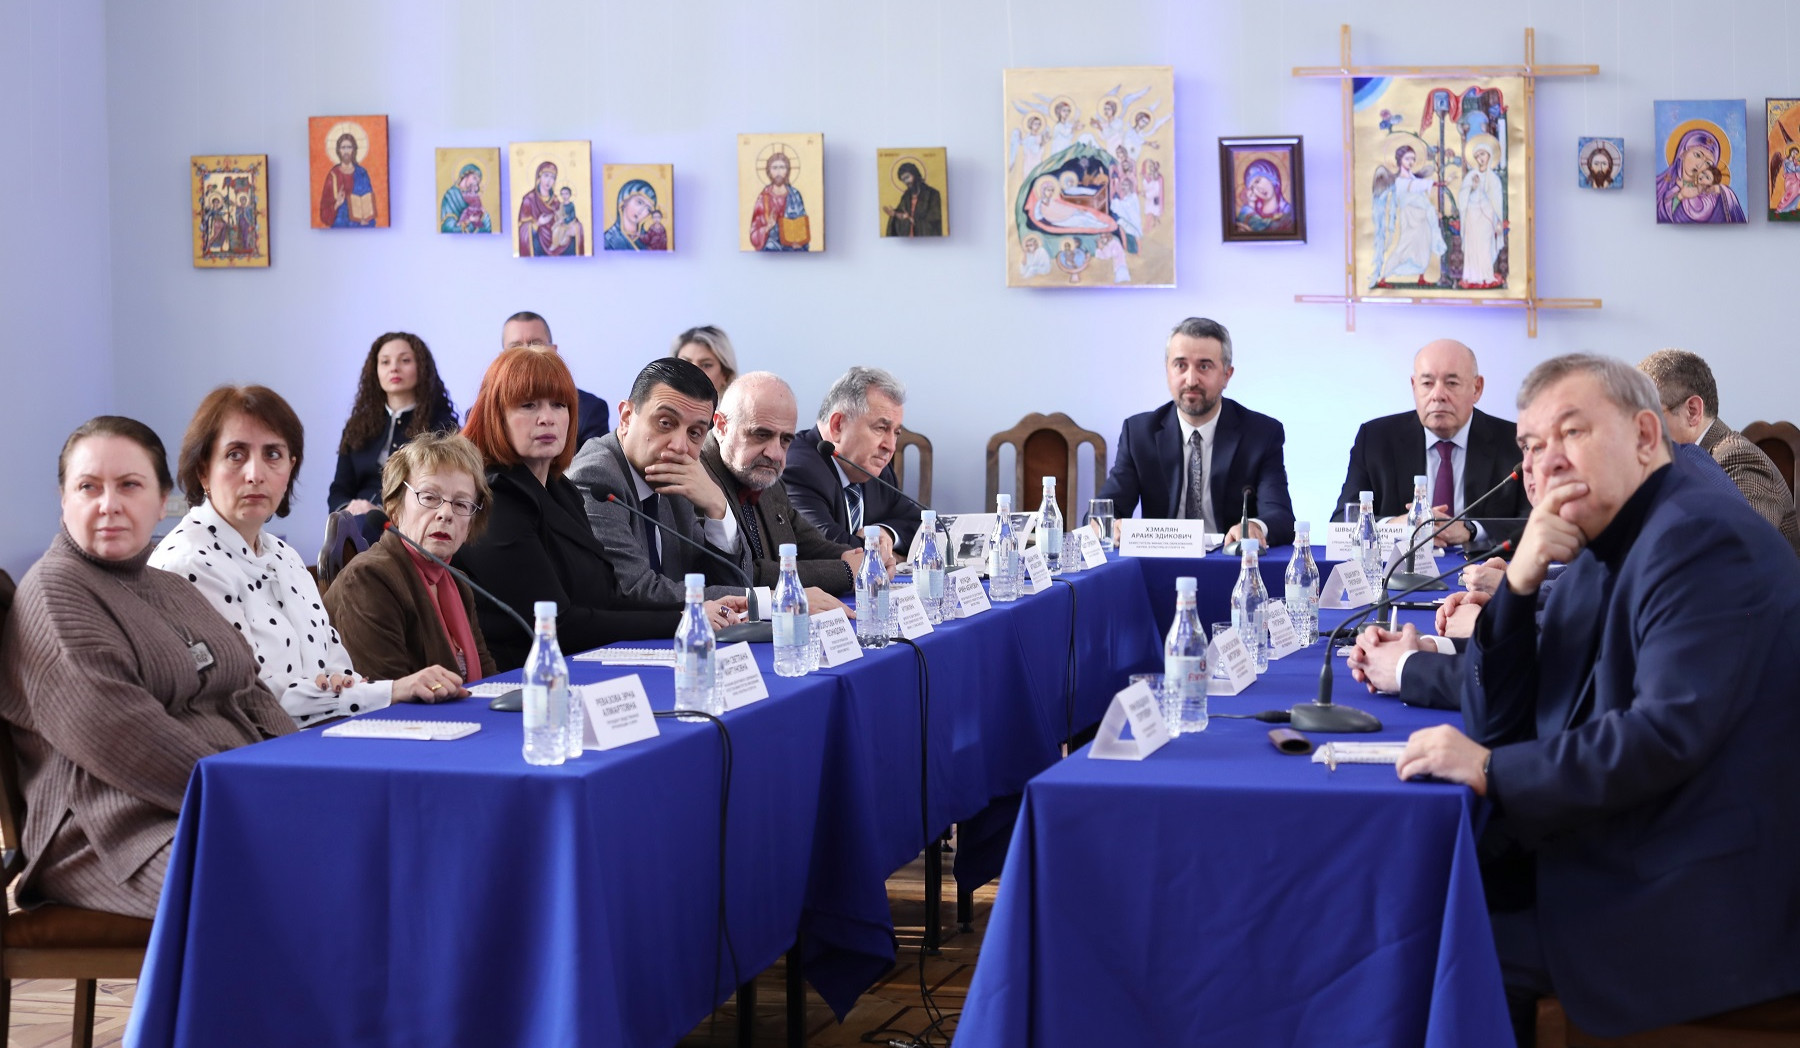 Համագործակցության նոր հարթակ. Երևանում մեկնարկել է «Հայ-ռուսական երկխոսություն» հիմնադիր համաժողովը